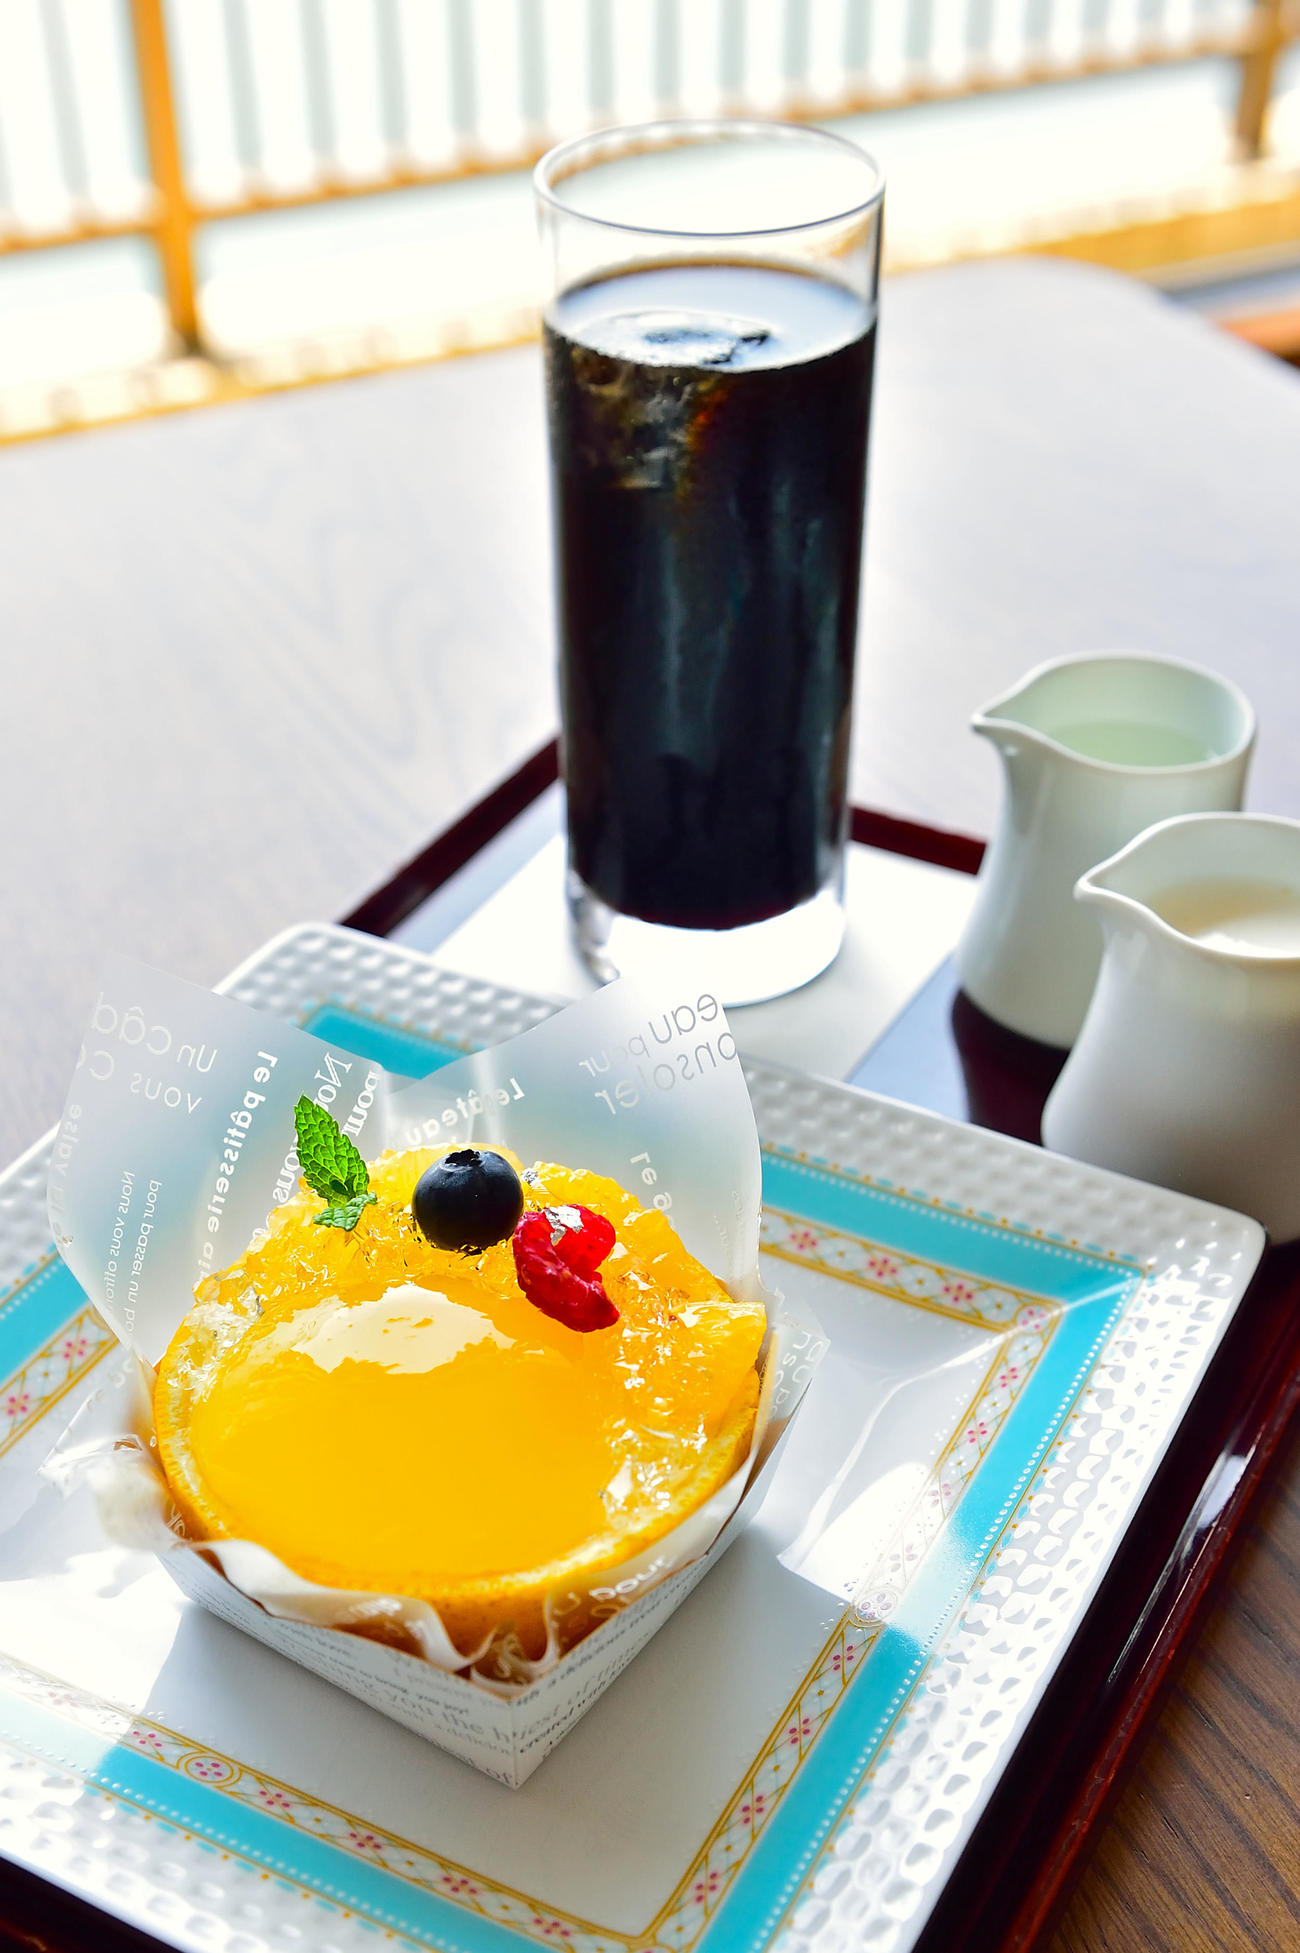 藤井聡太棋聖が午前のおやつに注文した「なるとオレンジ」「アイスコーヒー」（日本将棋連盟提供）